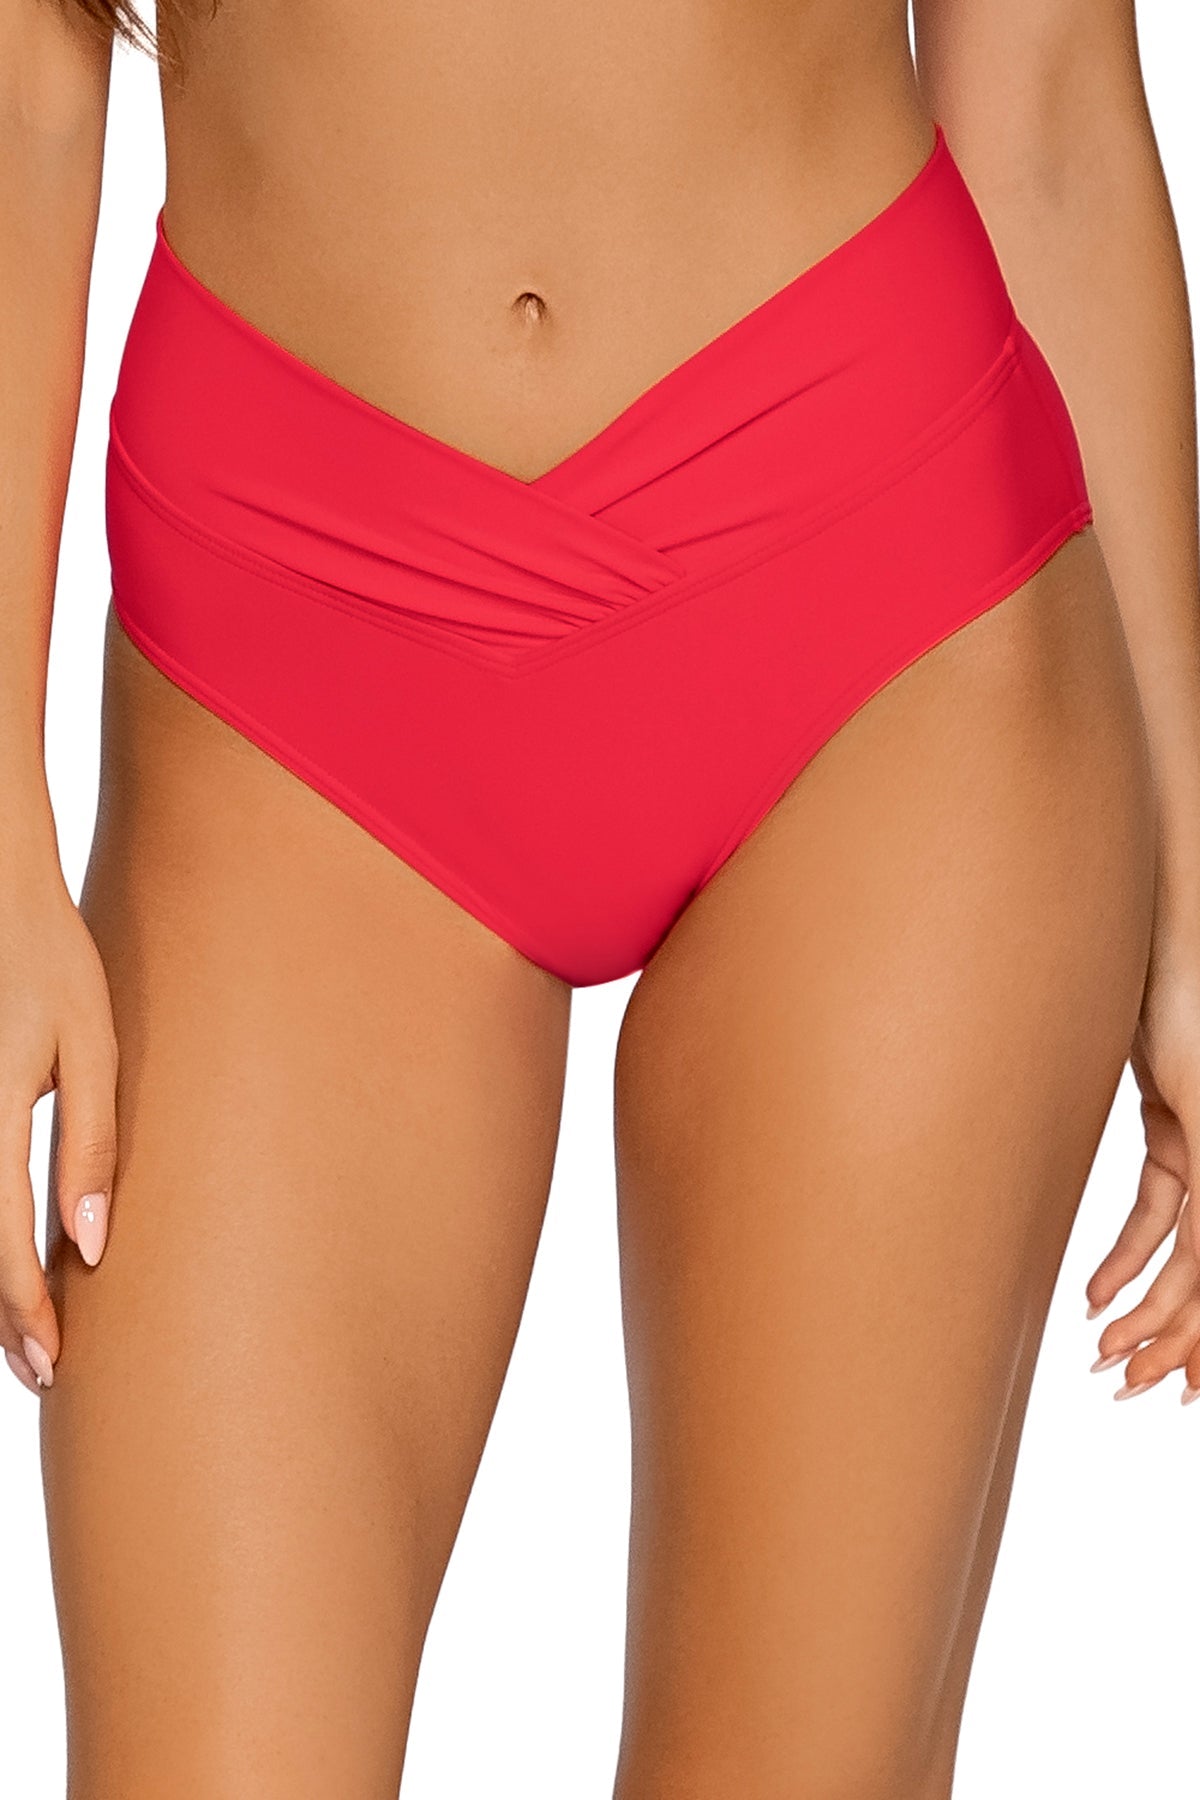 Summer Lovin V-Front Bikini Bottom The Bikini Shoppe